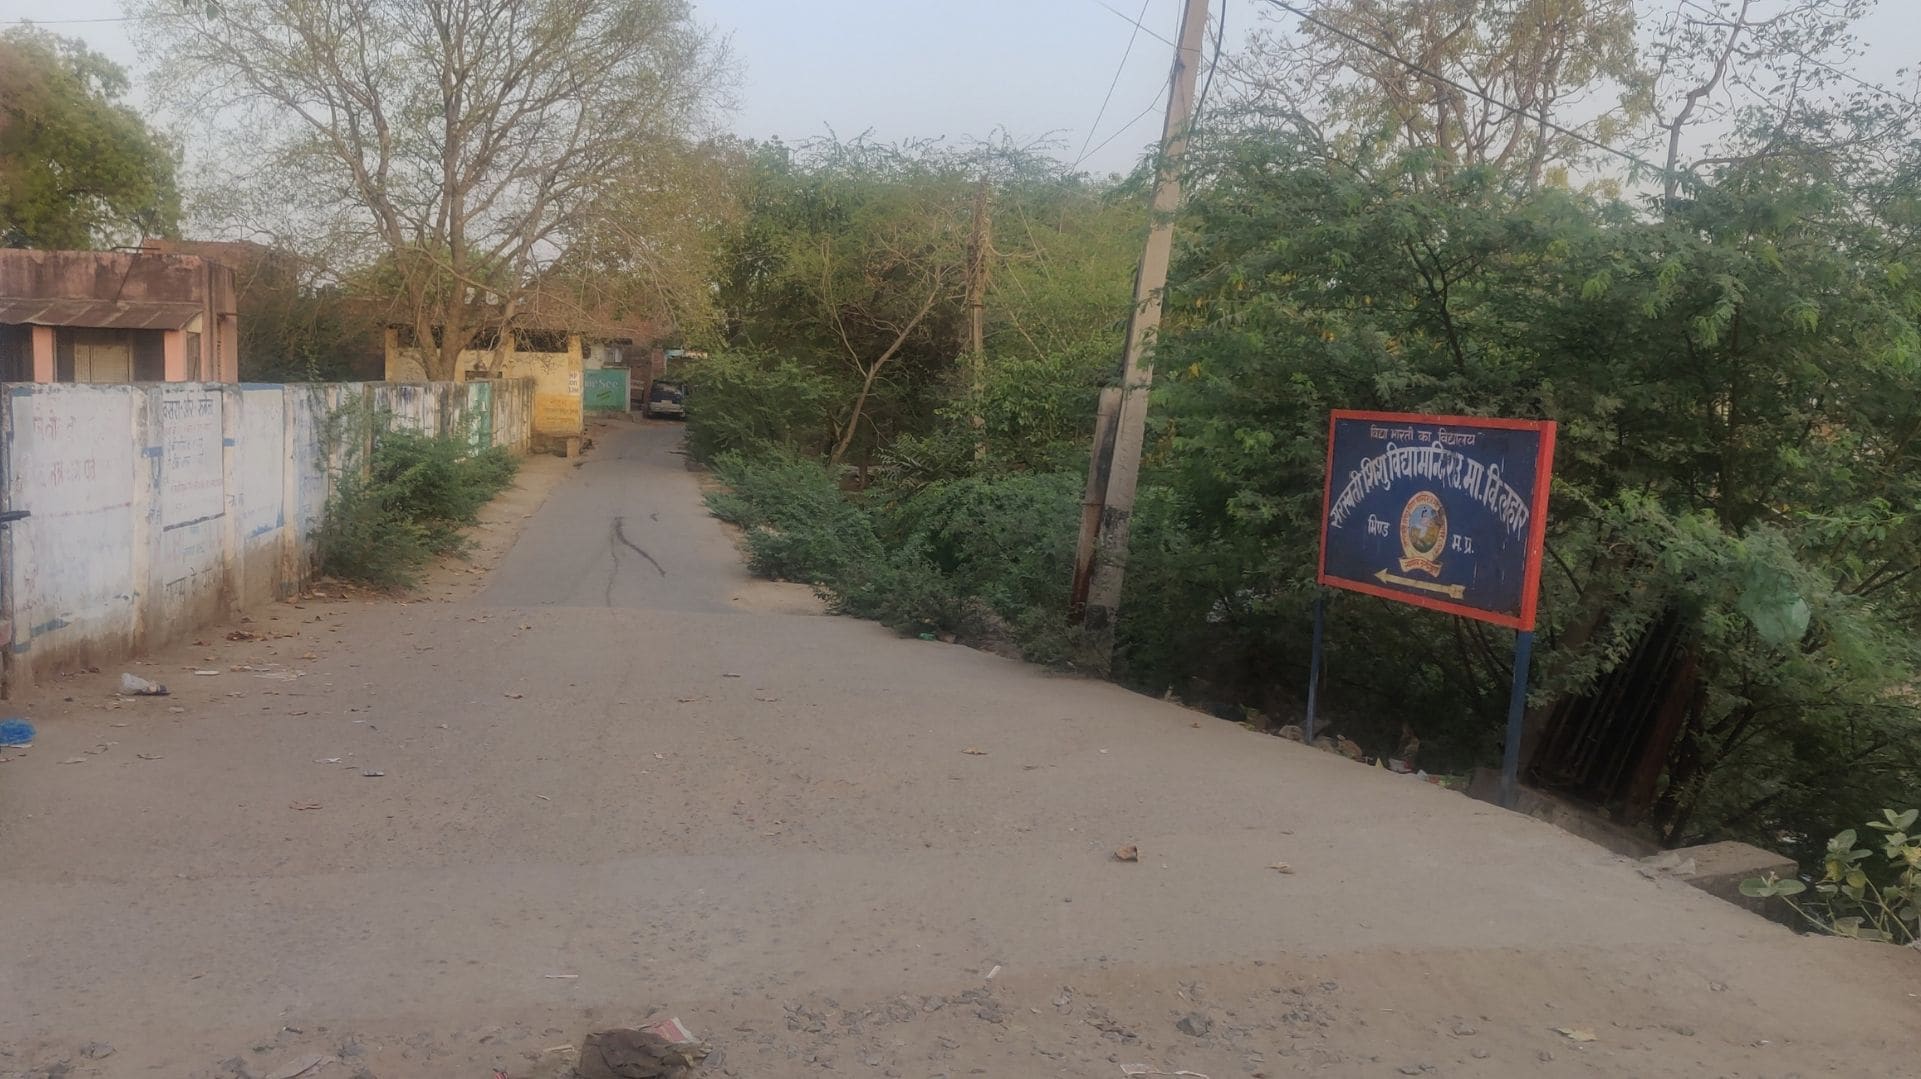 12. Sign board of Saraswati Shishu Mandir, Lahar